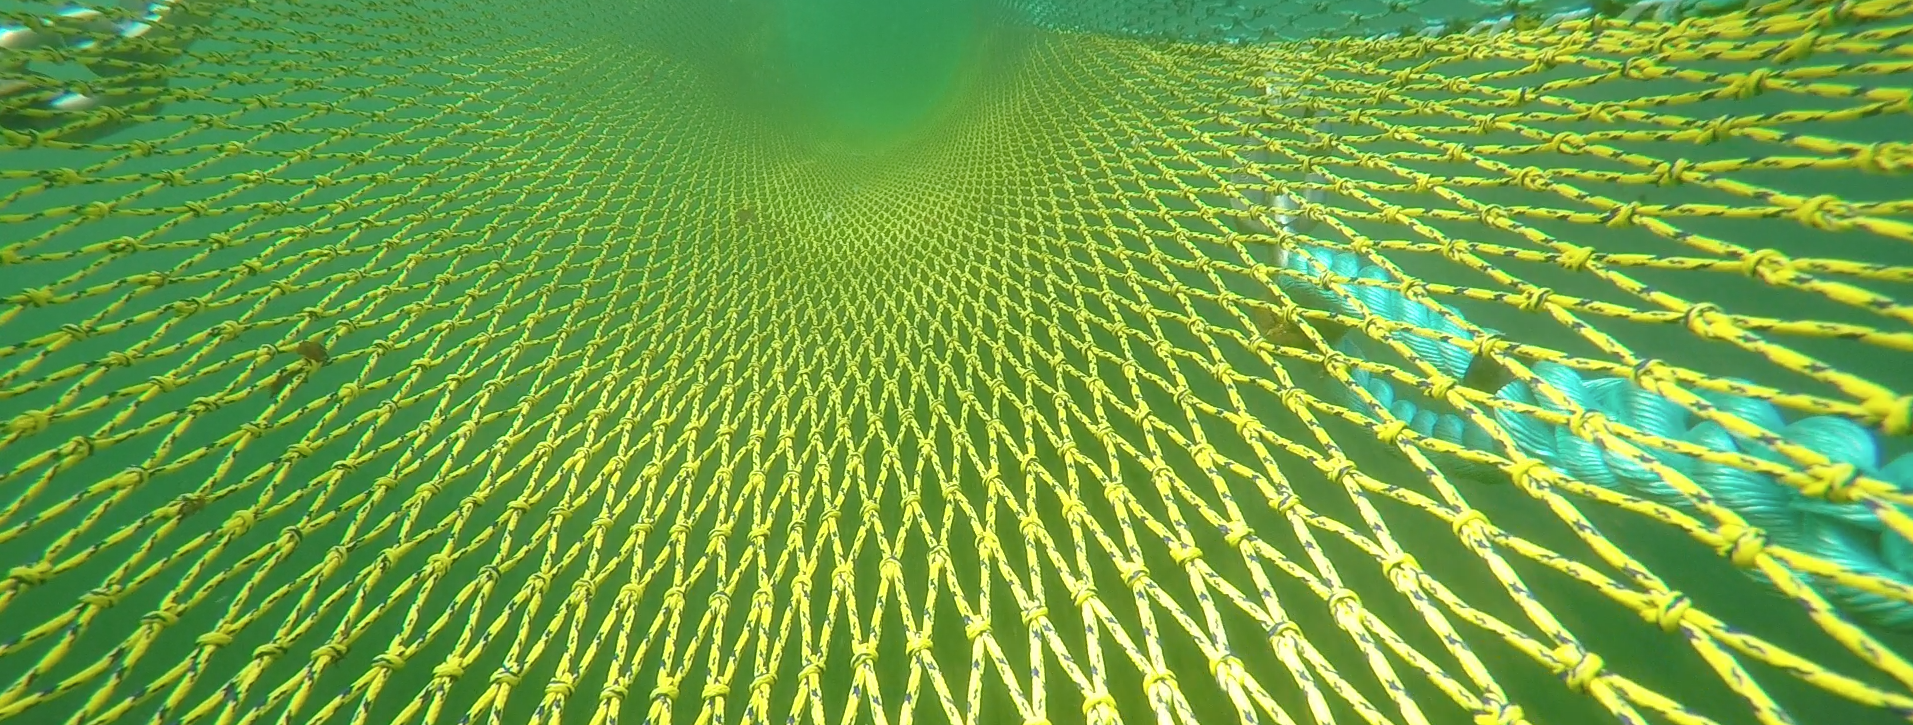 A fishing net.